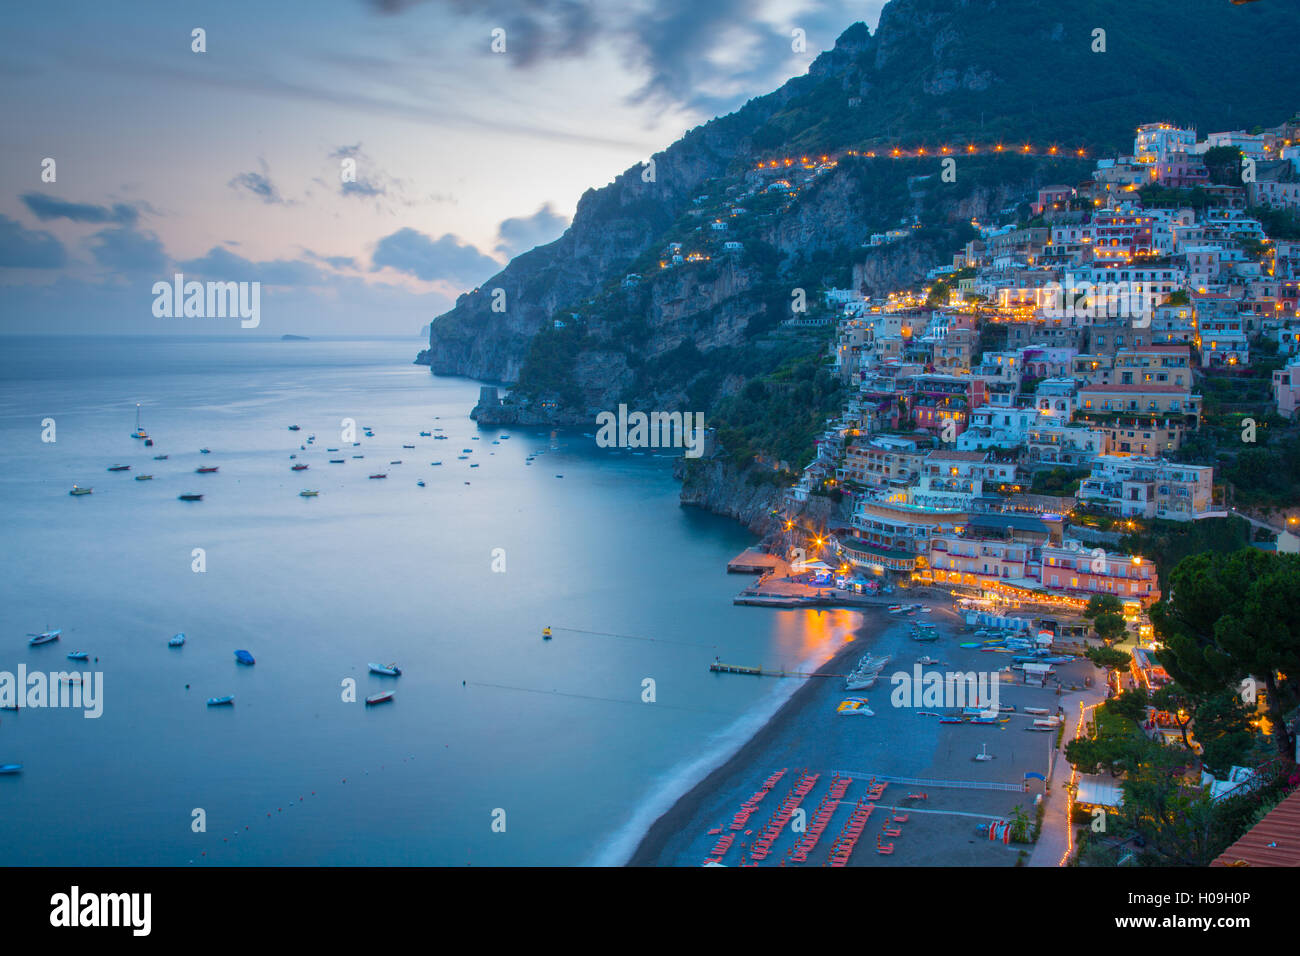 Vistas de Positano, Costiera Amalfitana (Costa de Amalfi), Sitio de Patrimonio Mundial de la UNESCO, en la provincia de Salerno, Región de Campania, Italia, Europa Foto de stock